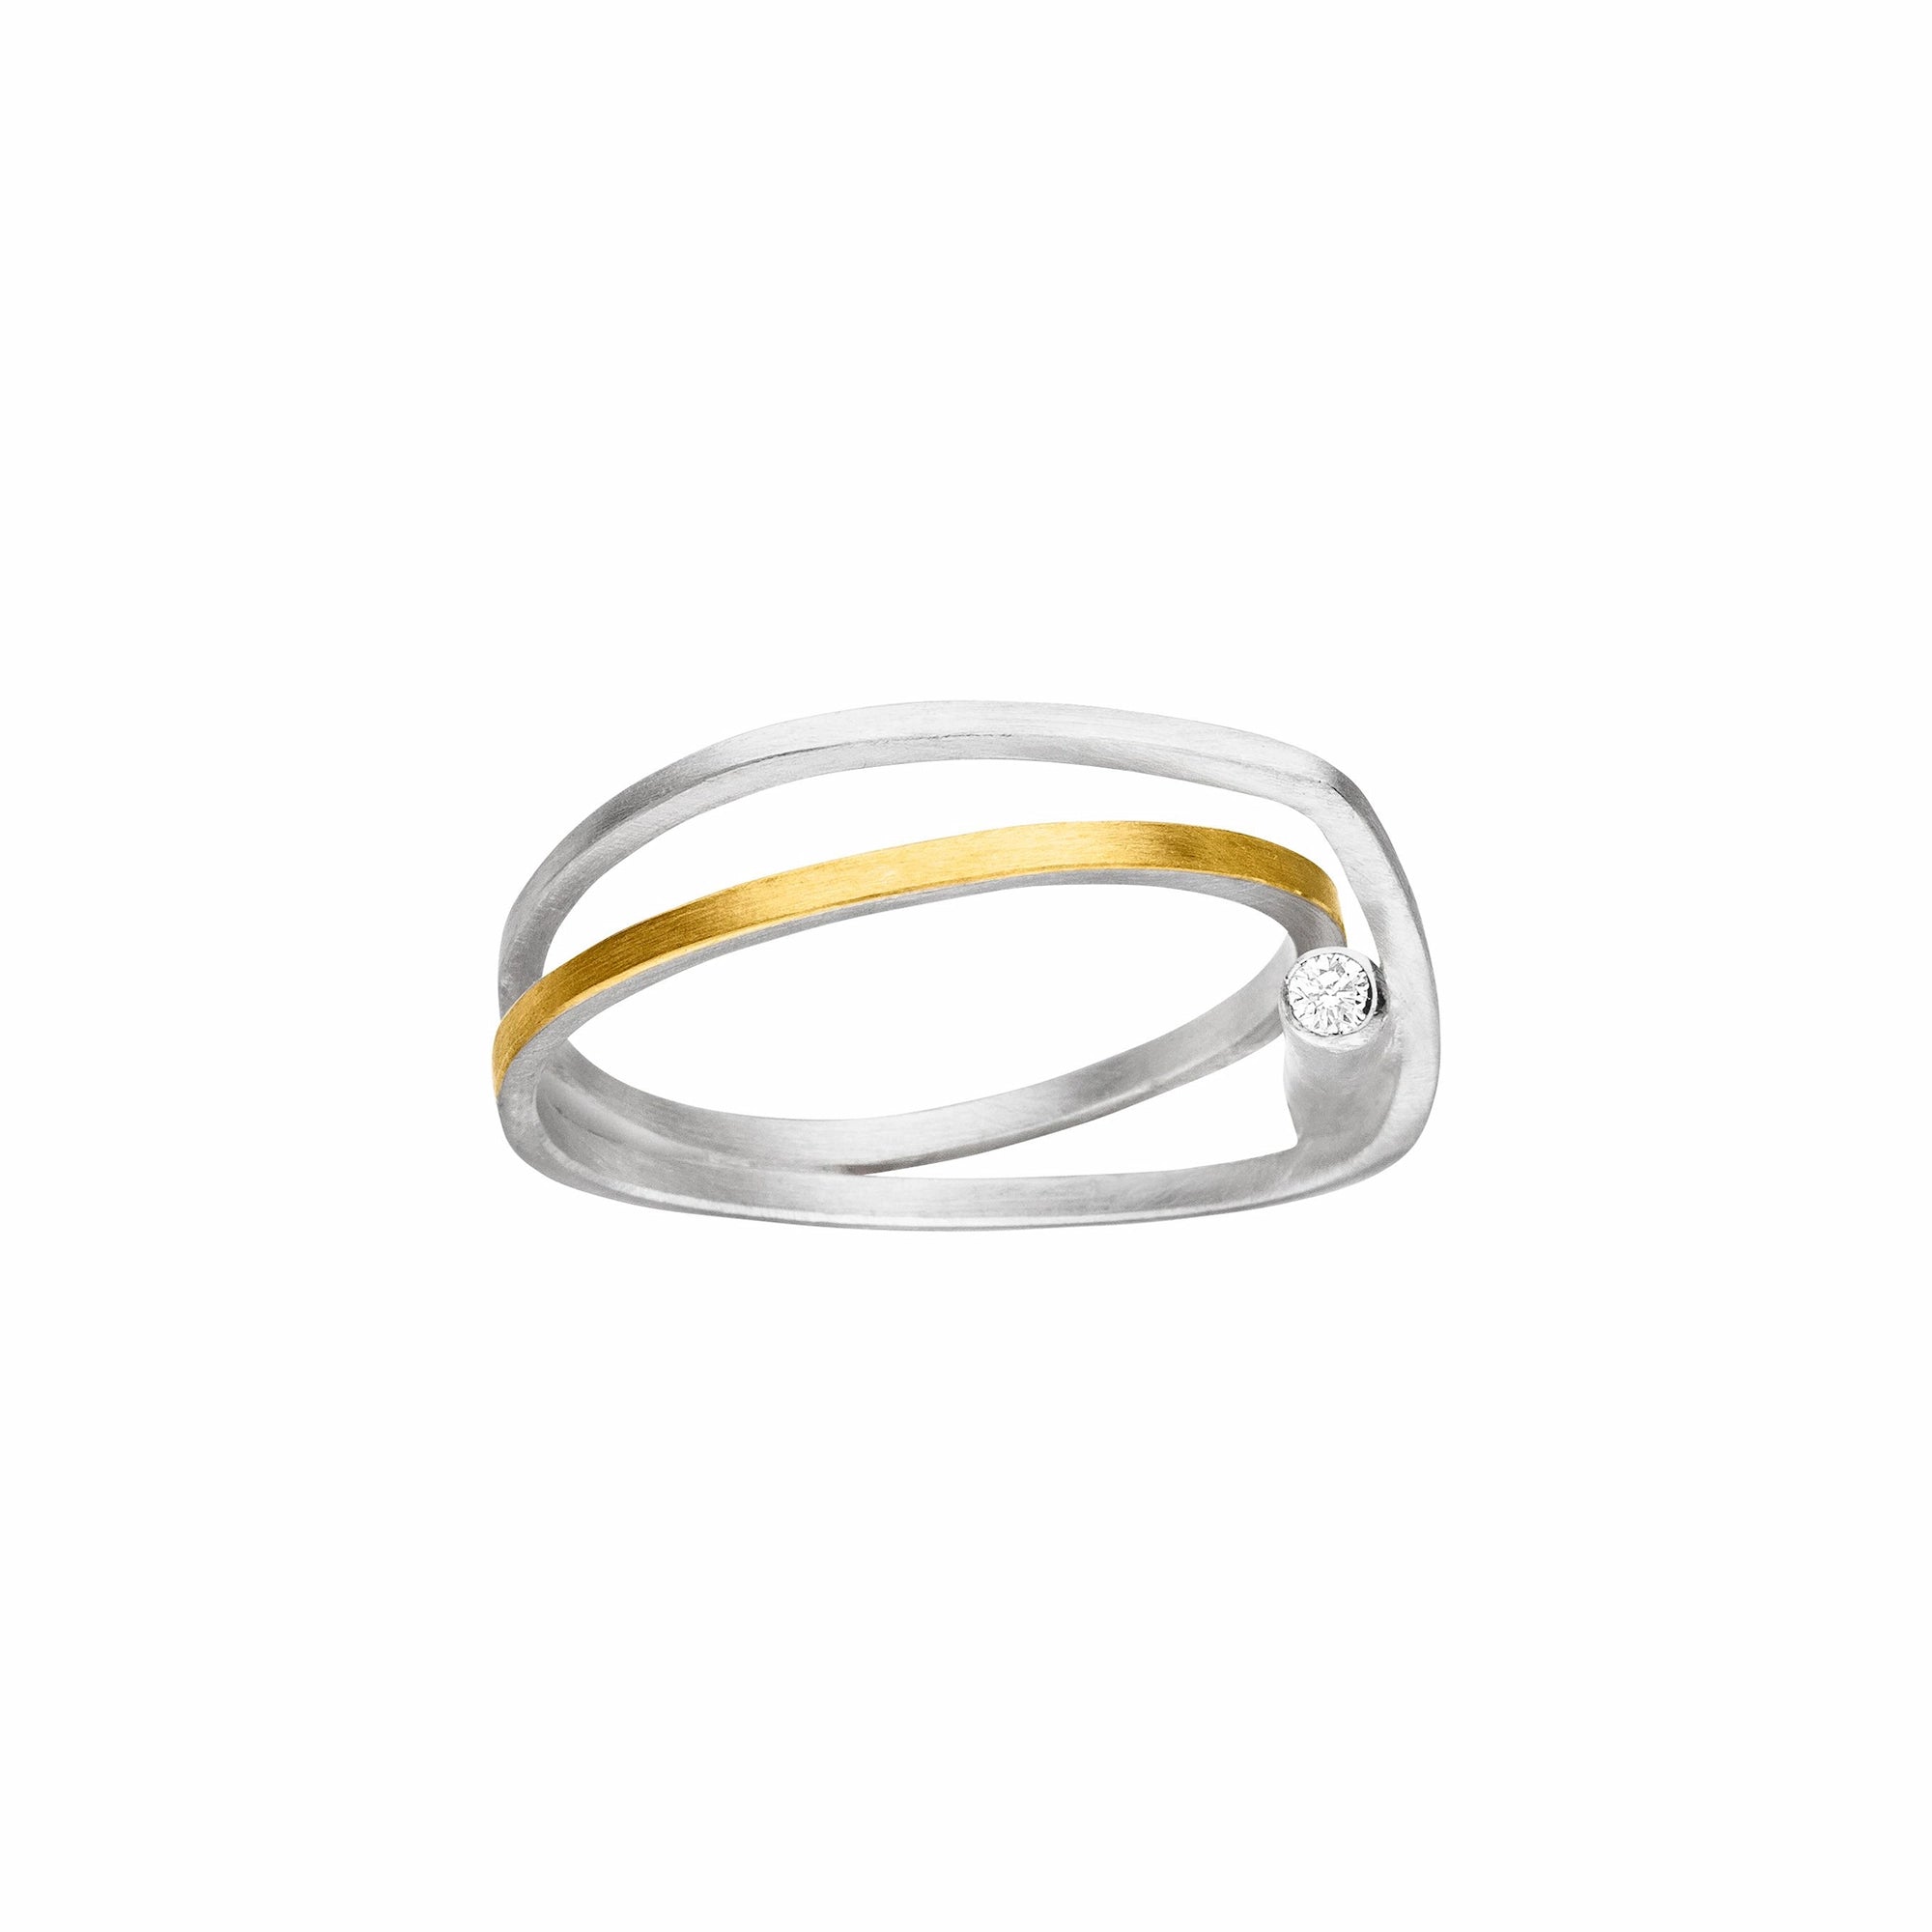 Silberner Ring in künstlerischer Form, der mit einer Goldauflage und einem Brillanten verziert wurde